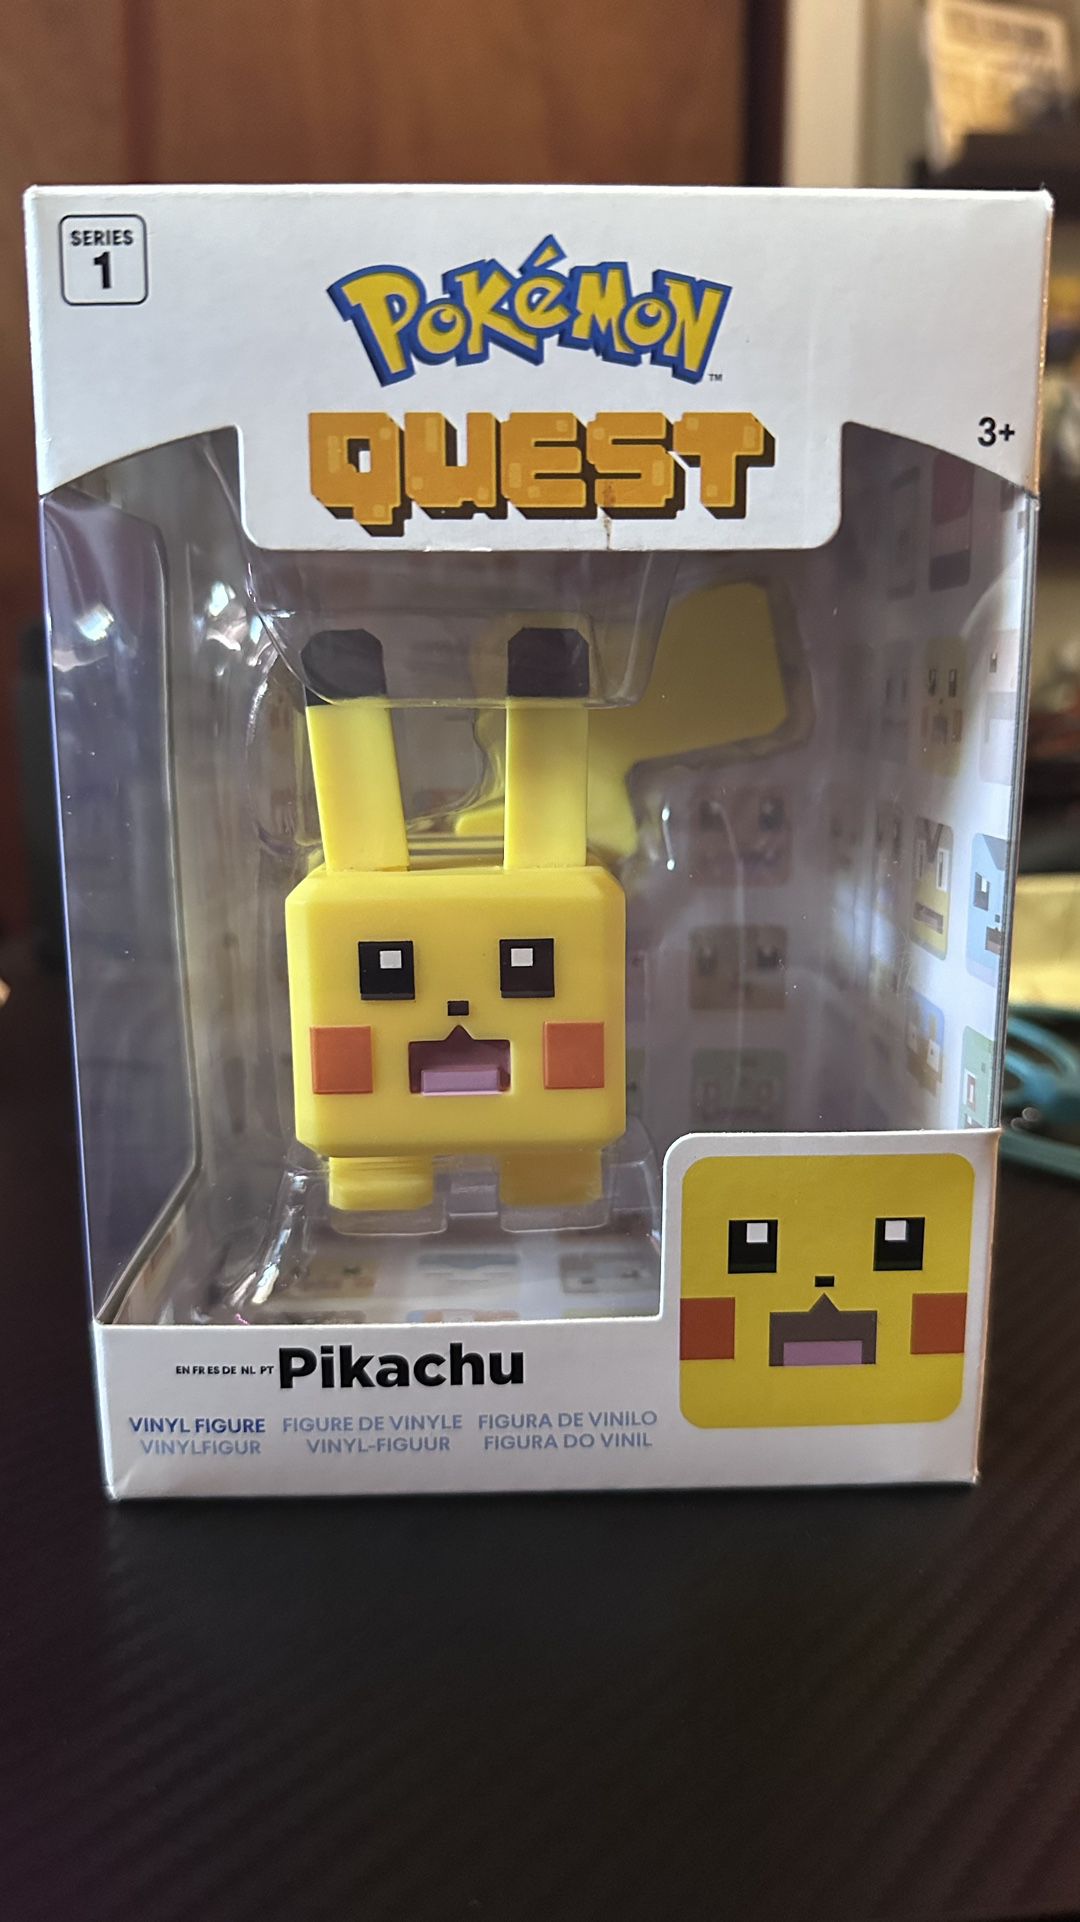 Pokémon Quest Pikachu Vinyl Figure